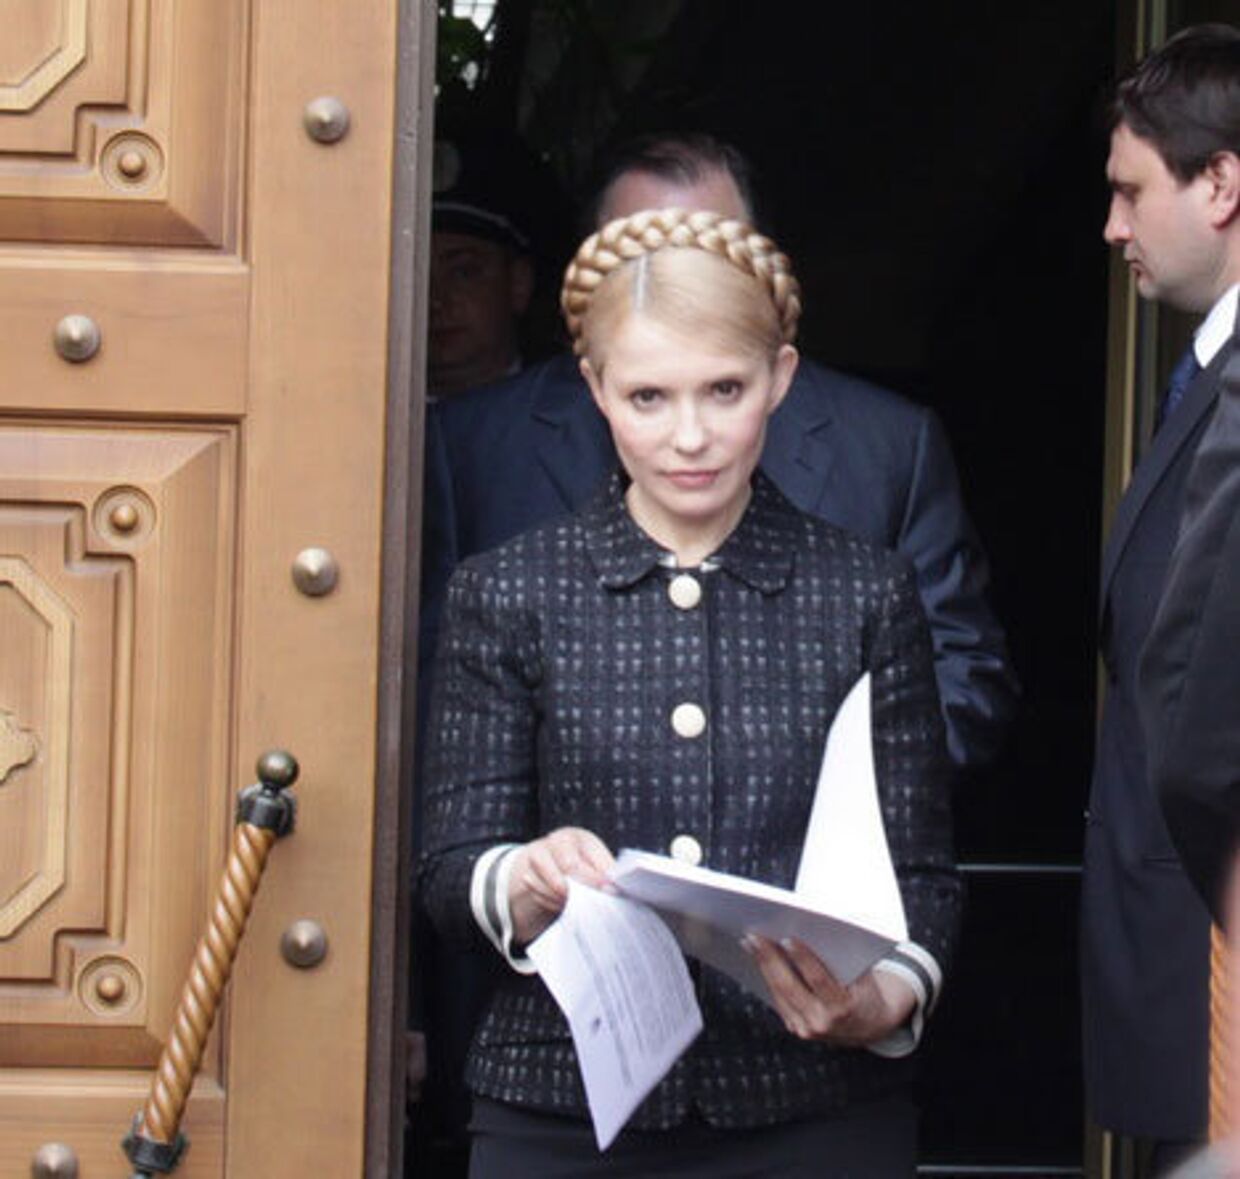 Юлия Тимошенко получила постановление о возбуждении уголовного дела 